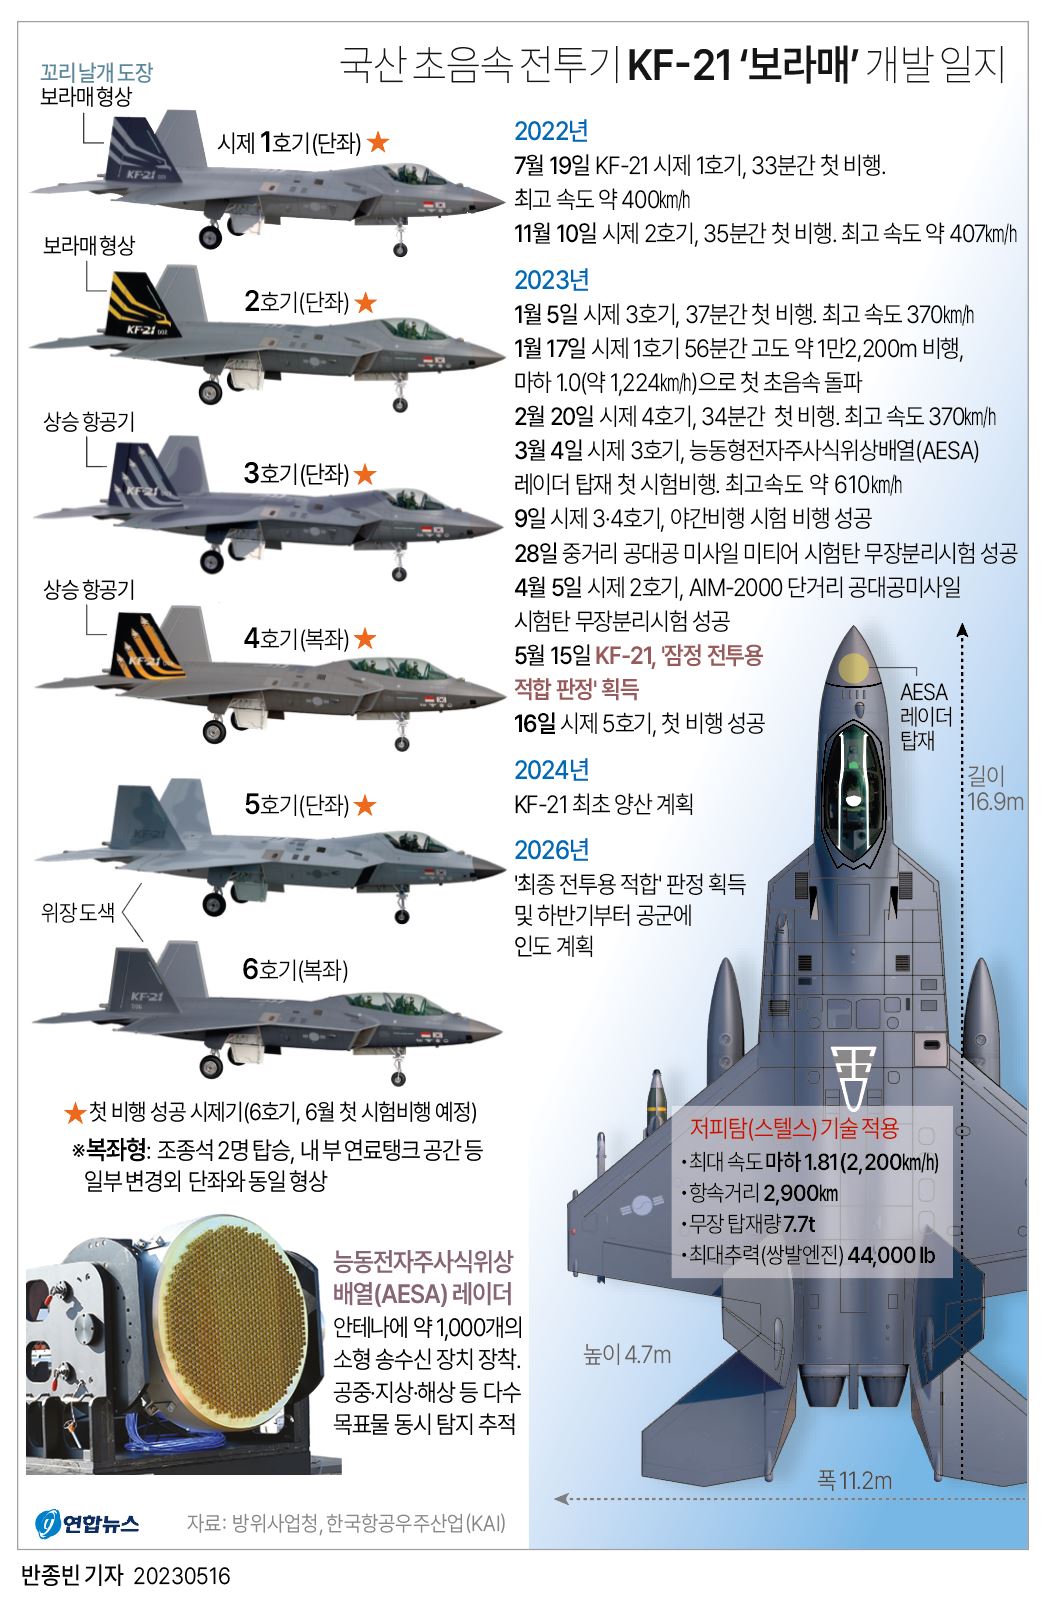 [그래픽] 국산 초음속 전투기 KF-21 '보라매' 개발 일지(종합)